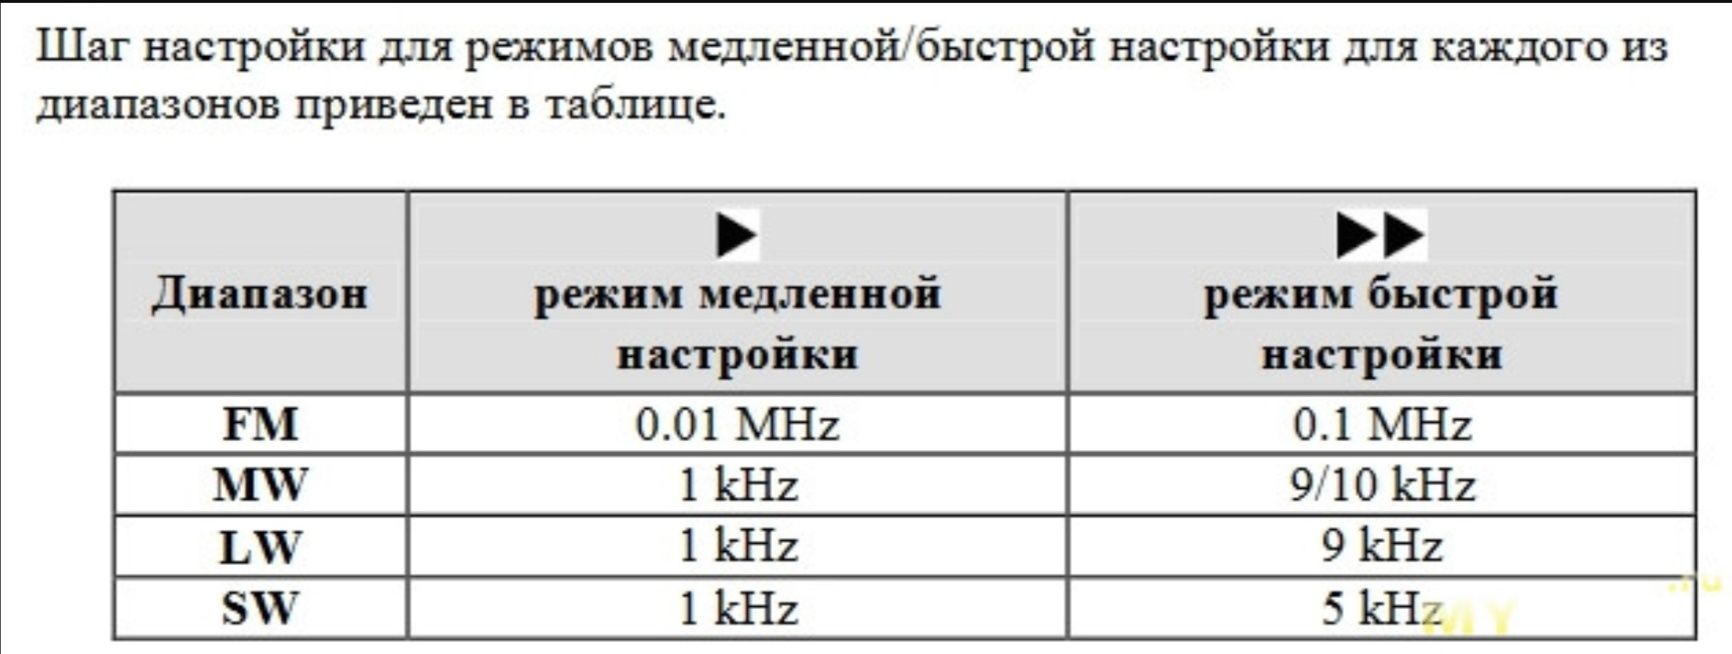 TECSUN PL-310ET DSP всеволновый цифровой радиоприемник FM/УКВ/КВ/ДВ/СВ